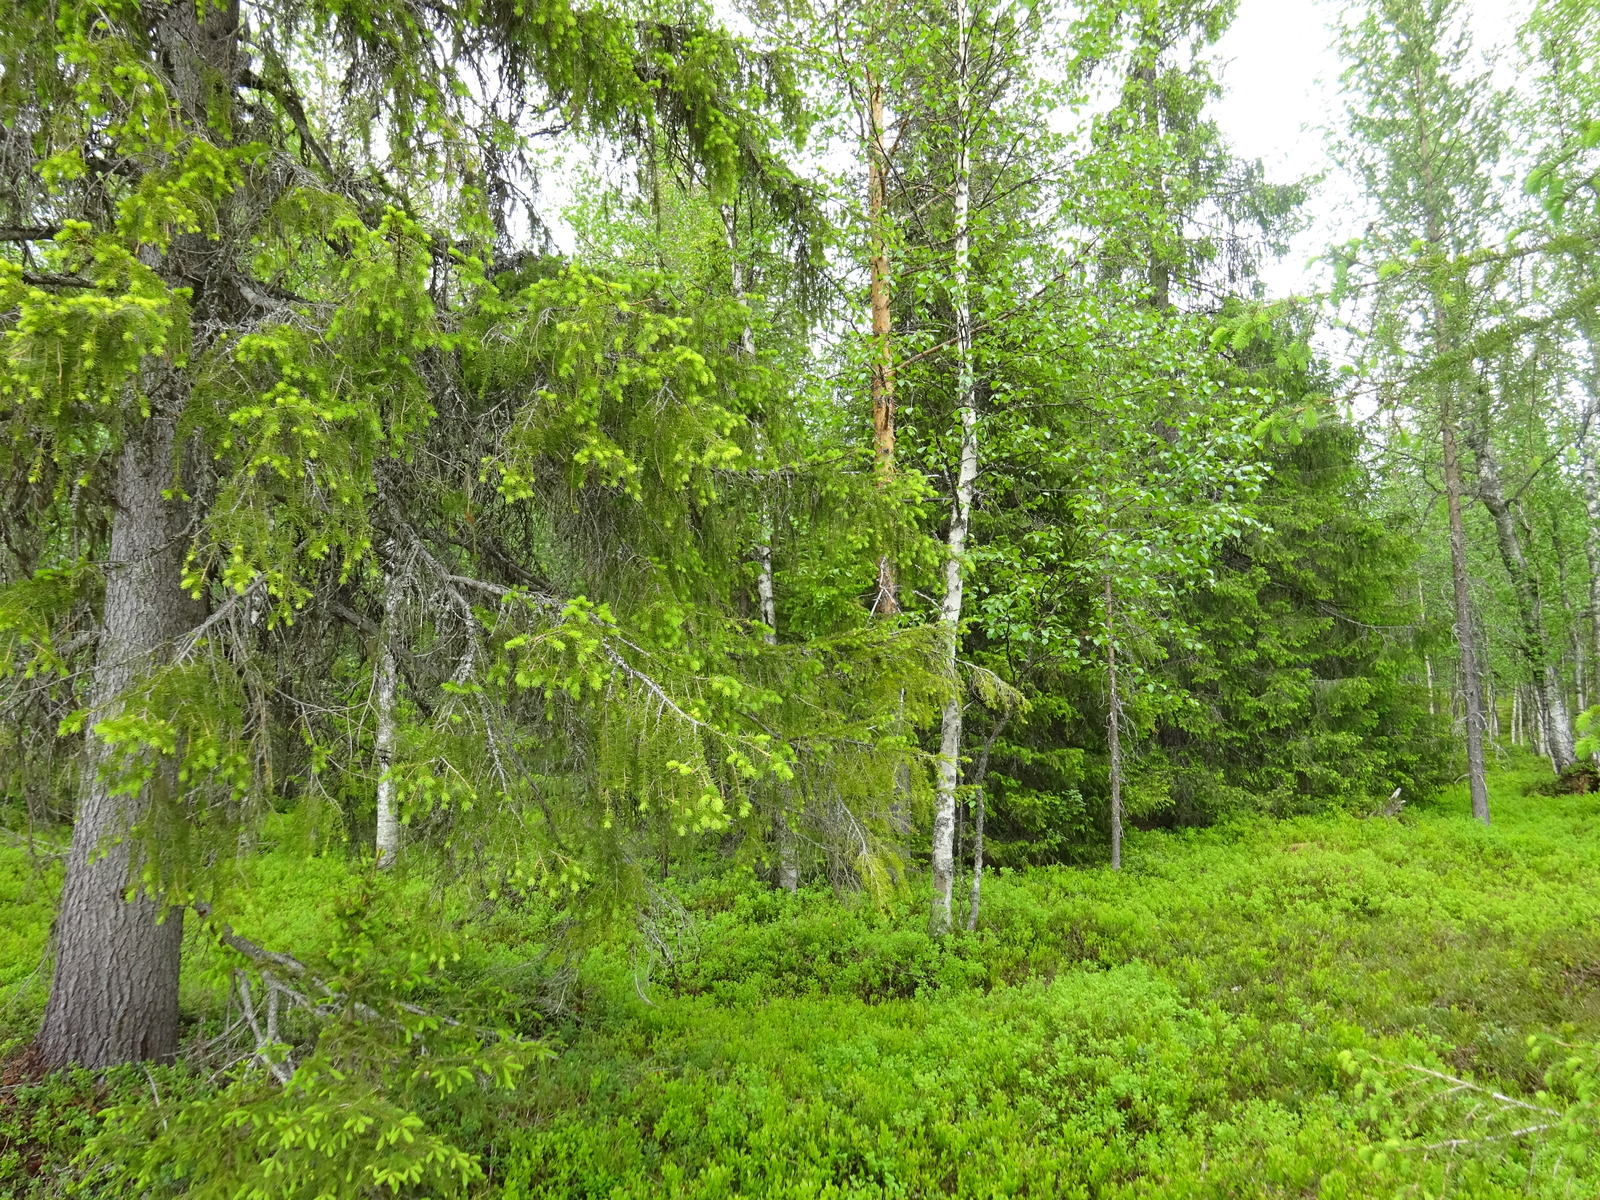 Vehreän kesäisessä metsäsä kasvaa kuusia, mäntyjä ja koivuja. Etuoikealla on puuton alue.